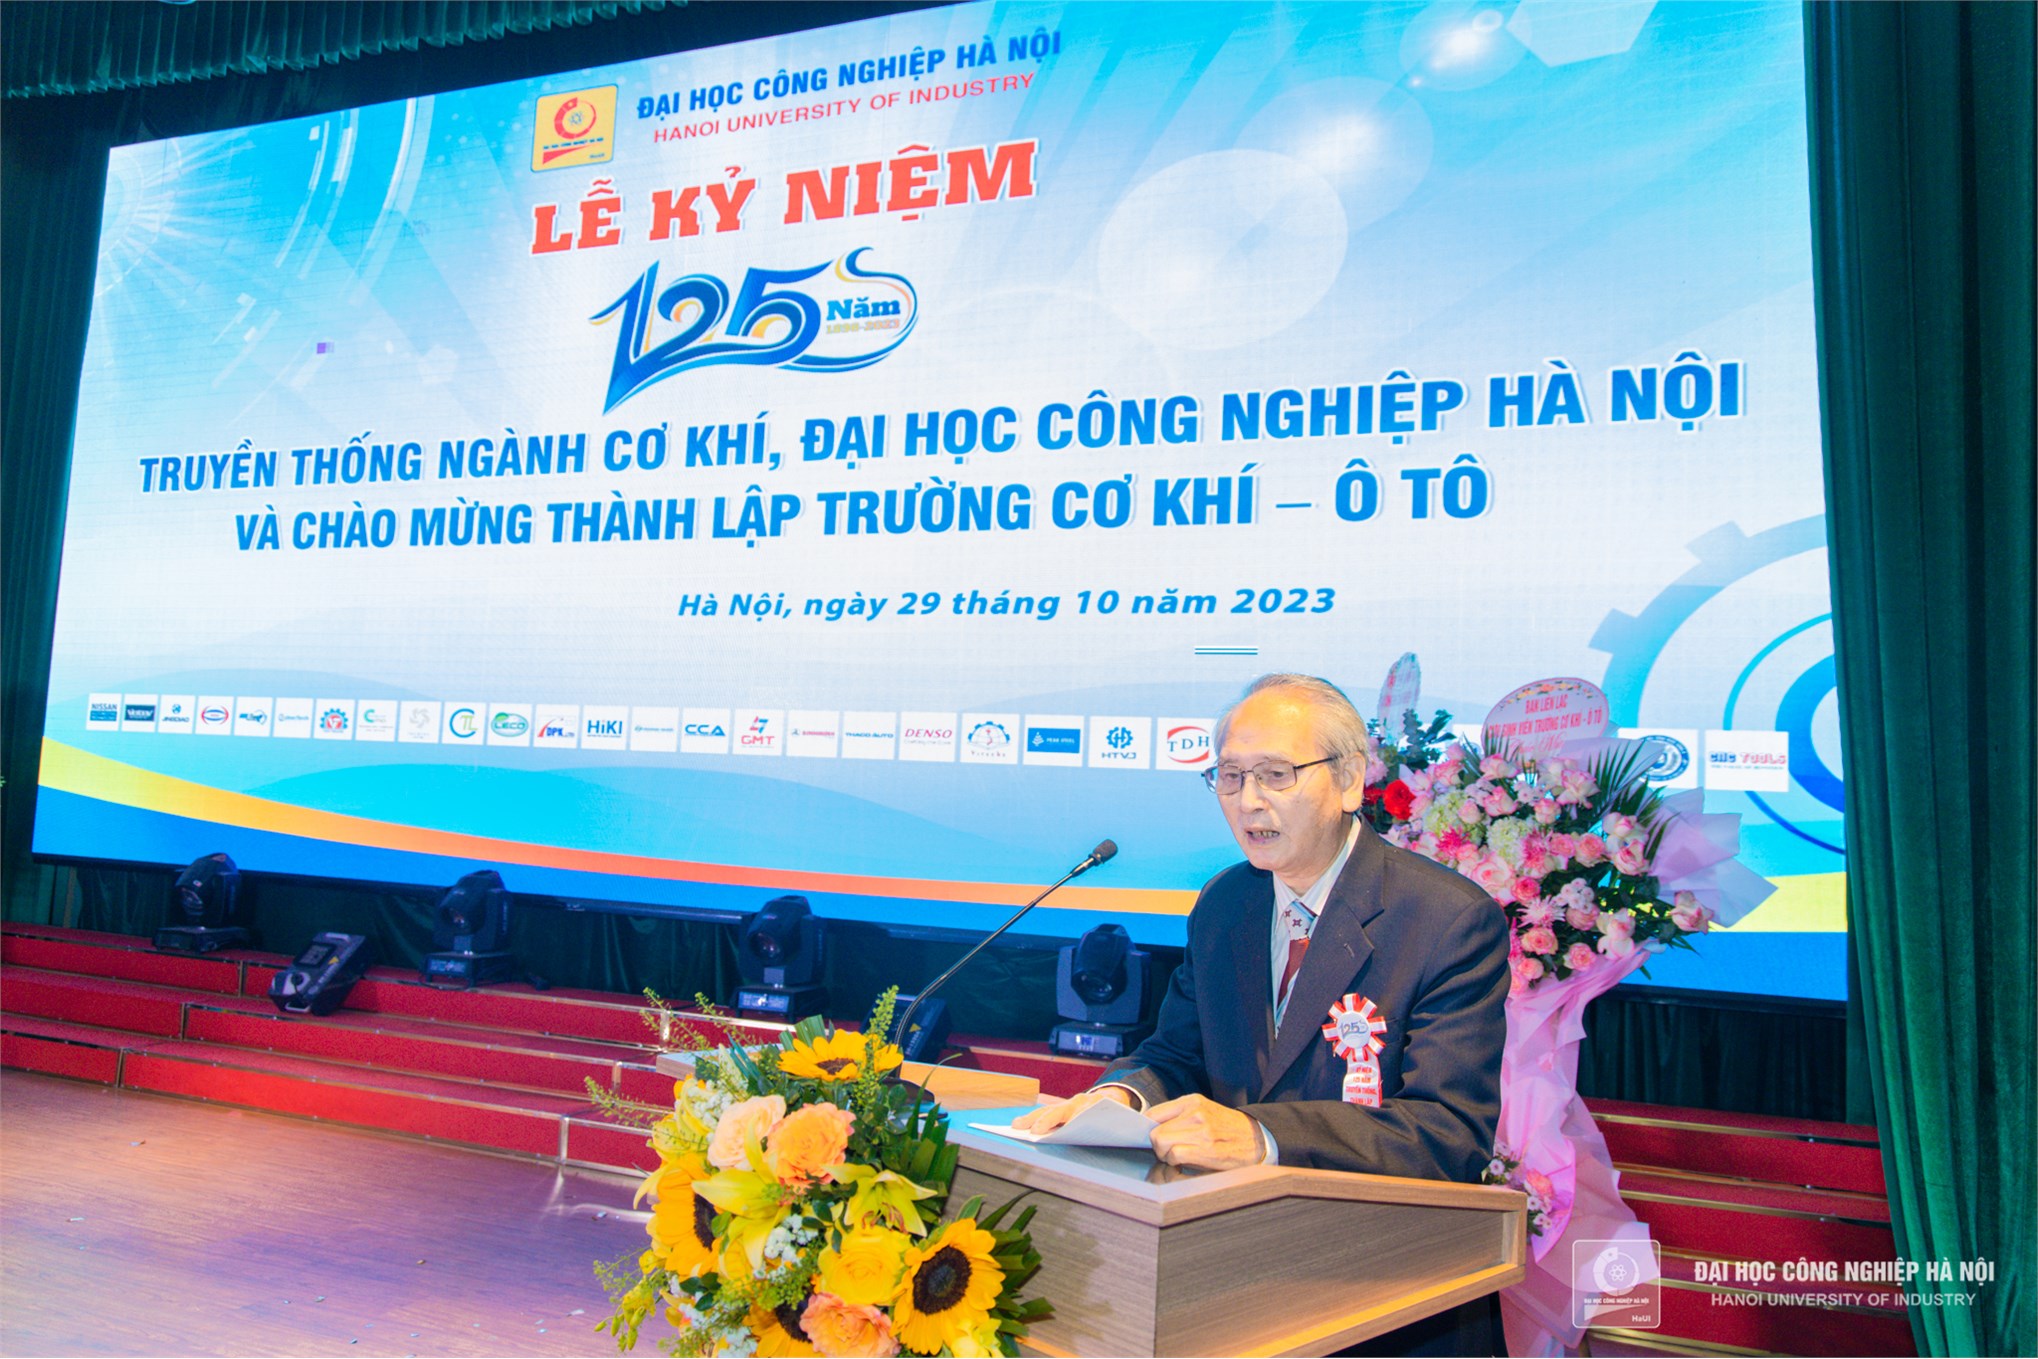 Lễ kỷ niệm 125 năm truyền thống Ngành Cơ khí HaUI và chào mừng thành lập Trường Cơ khí – Ô tô